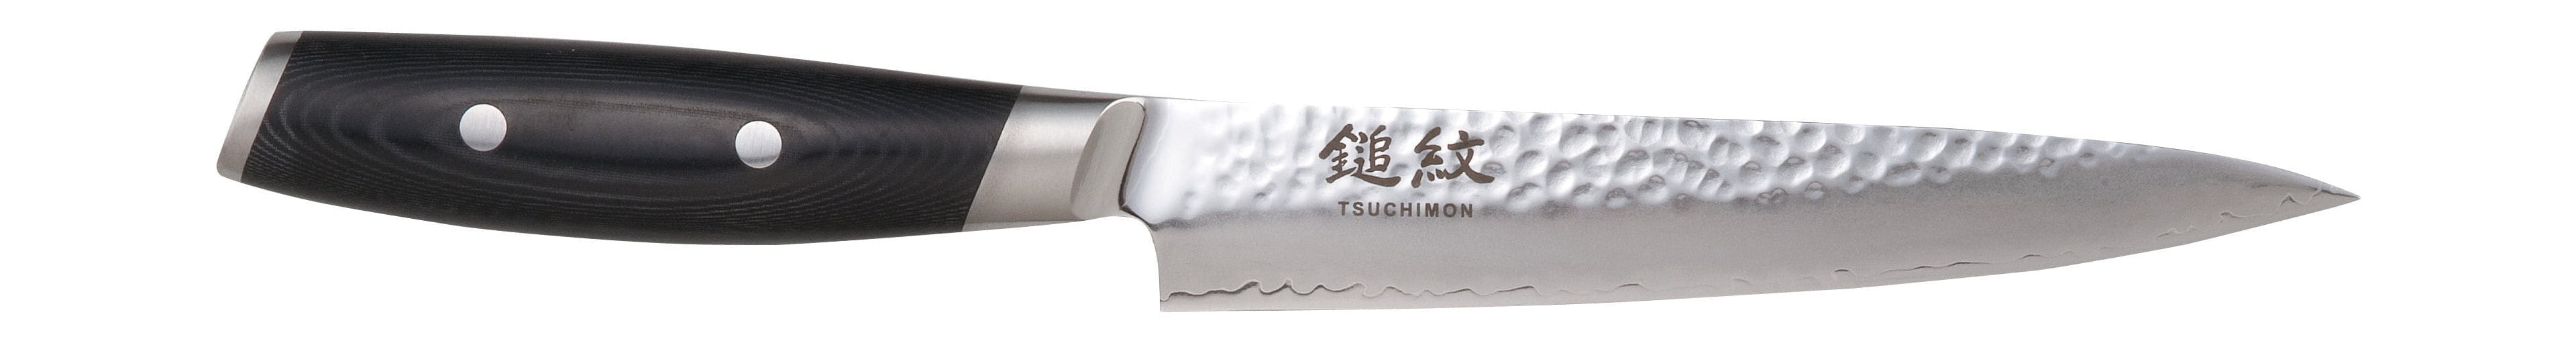 Coltello da intaglio Yaxell Tsuchimon, 18 cm